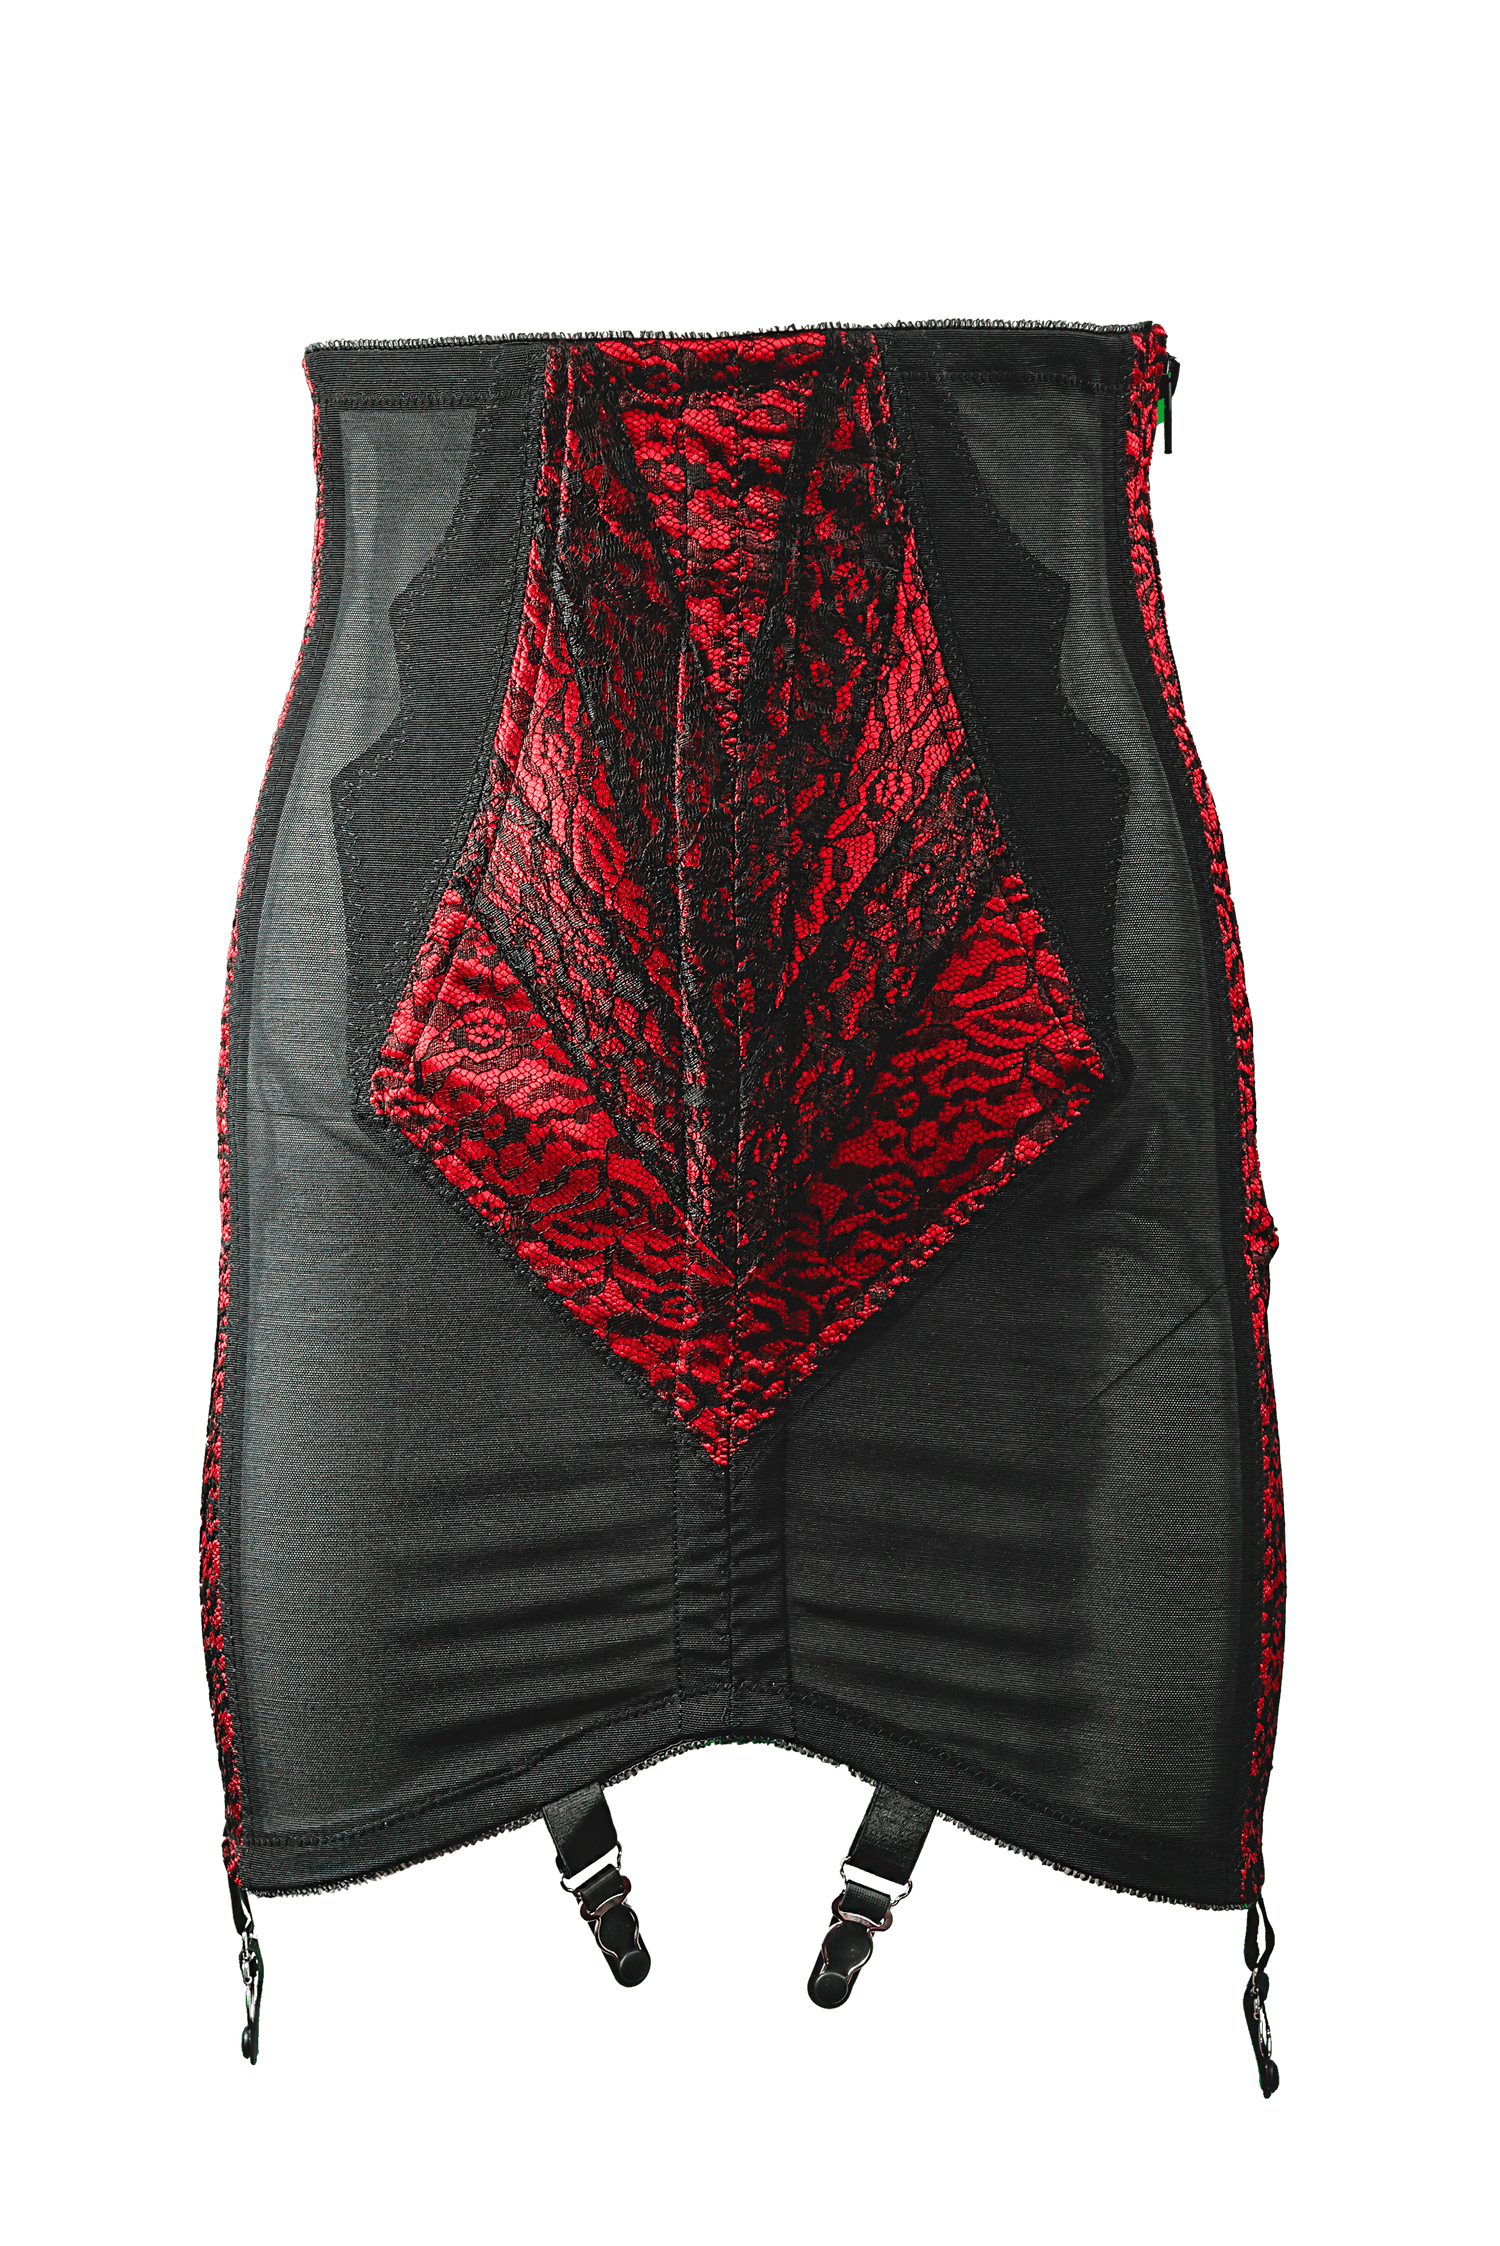 Women's Rago 1294 High Waist Open Bottom Girdle with Zipper (Red/Black 2X)